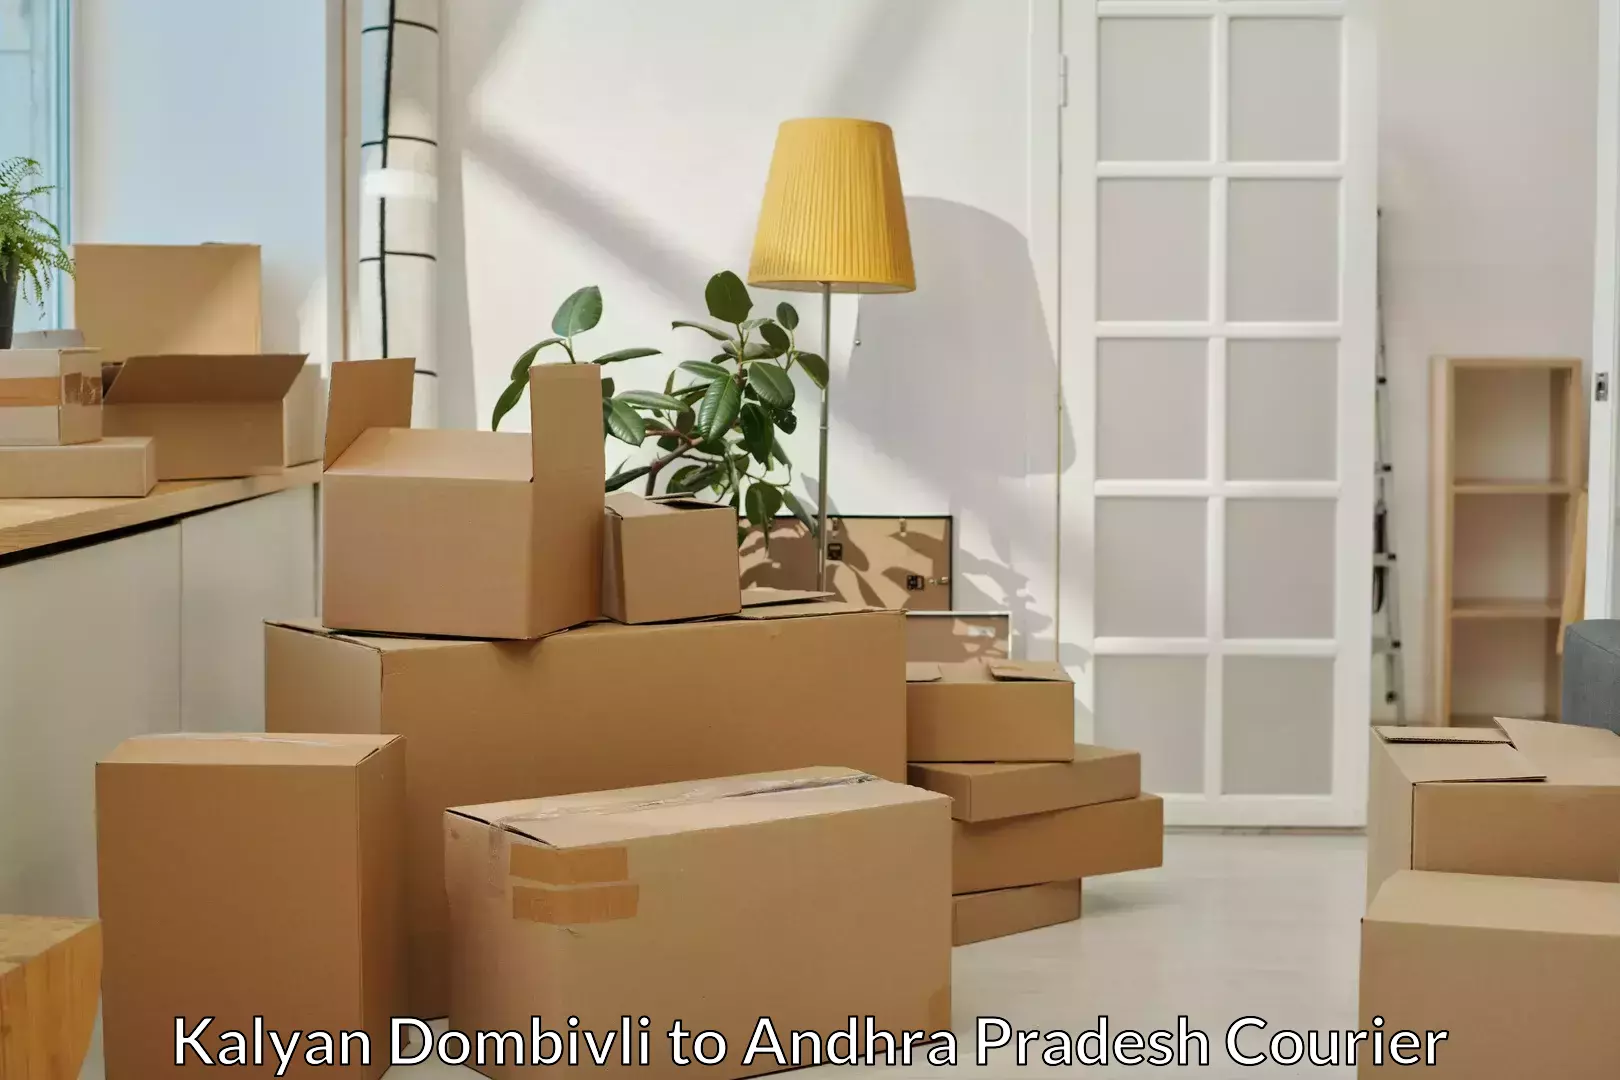 Furniture moving experts Kalyan Dombivli to Vijayawada